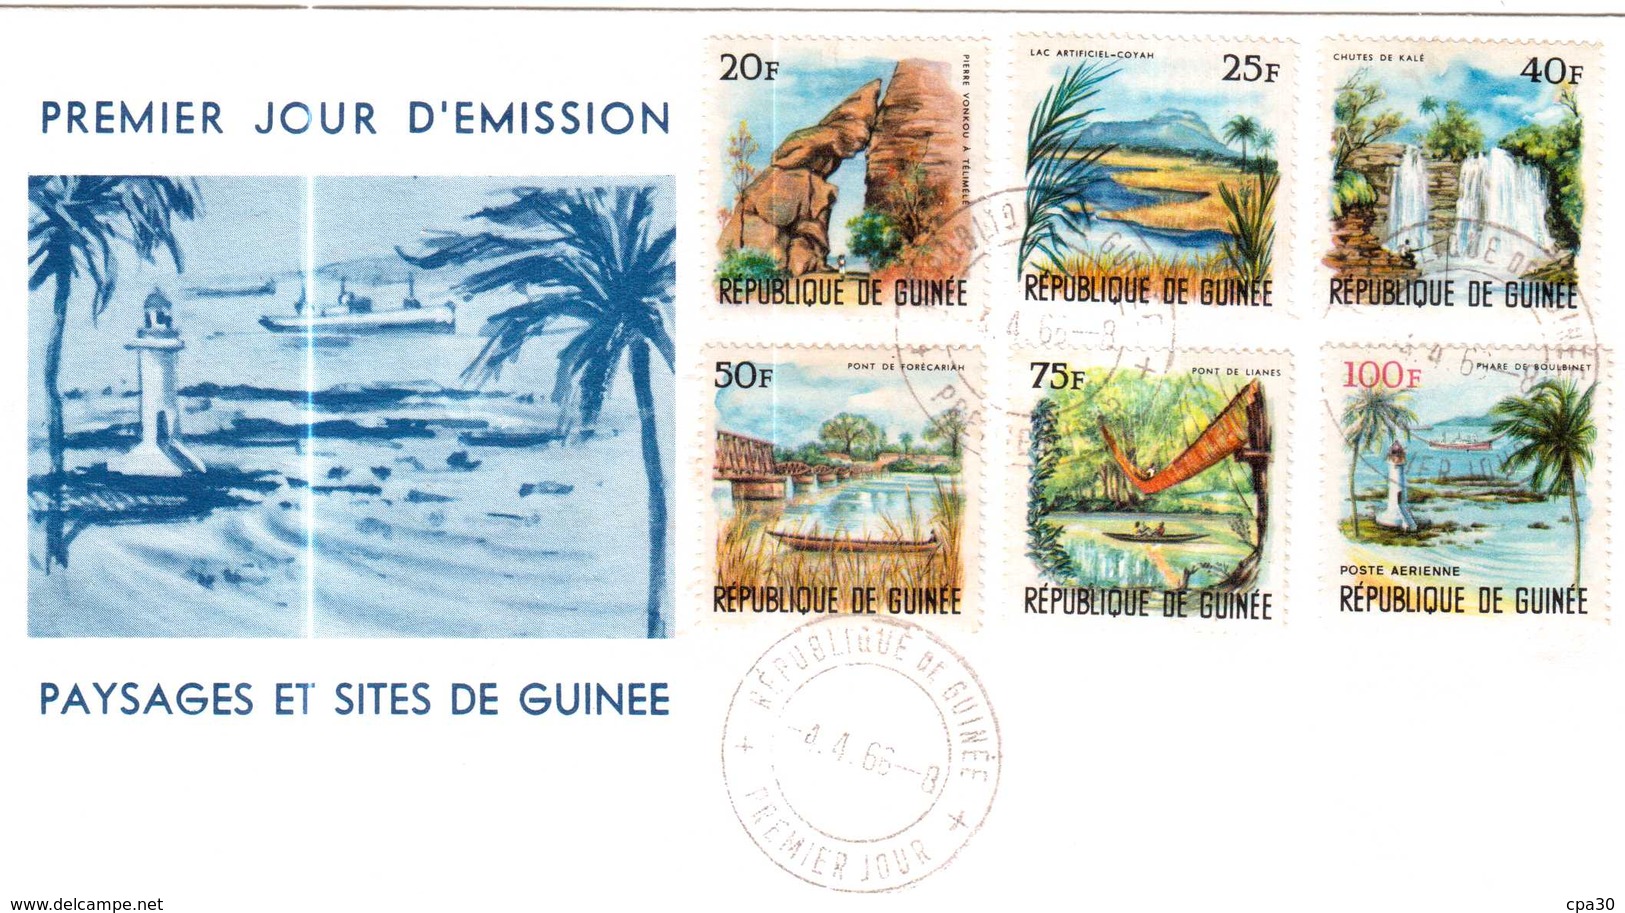 ENVELOPPE PREMIER JOUR D'EMISSION PAYSAGES ET SITES DE GUINEE 1966 - República De Guinea (1958-...)